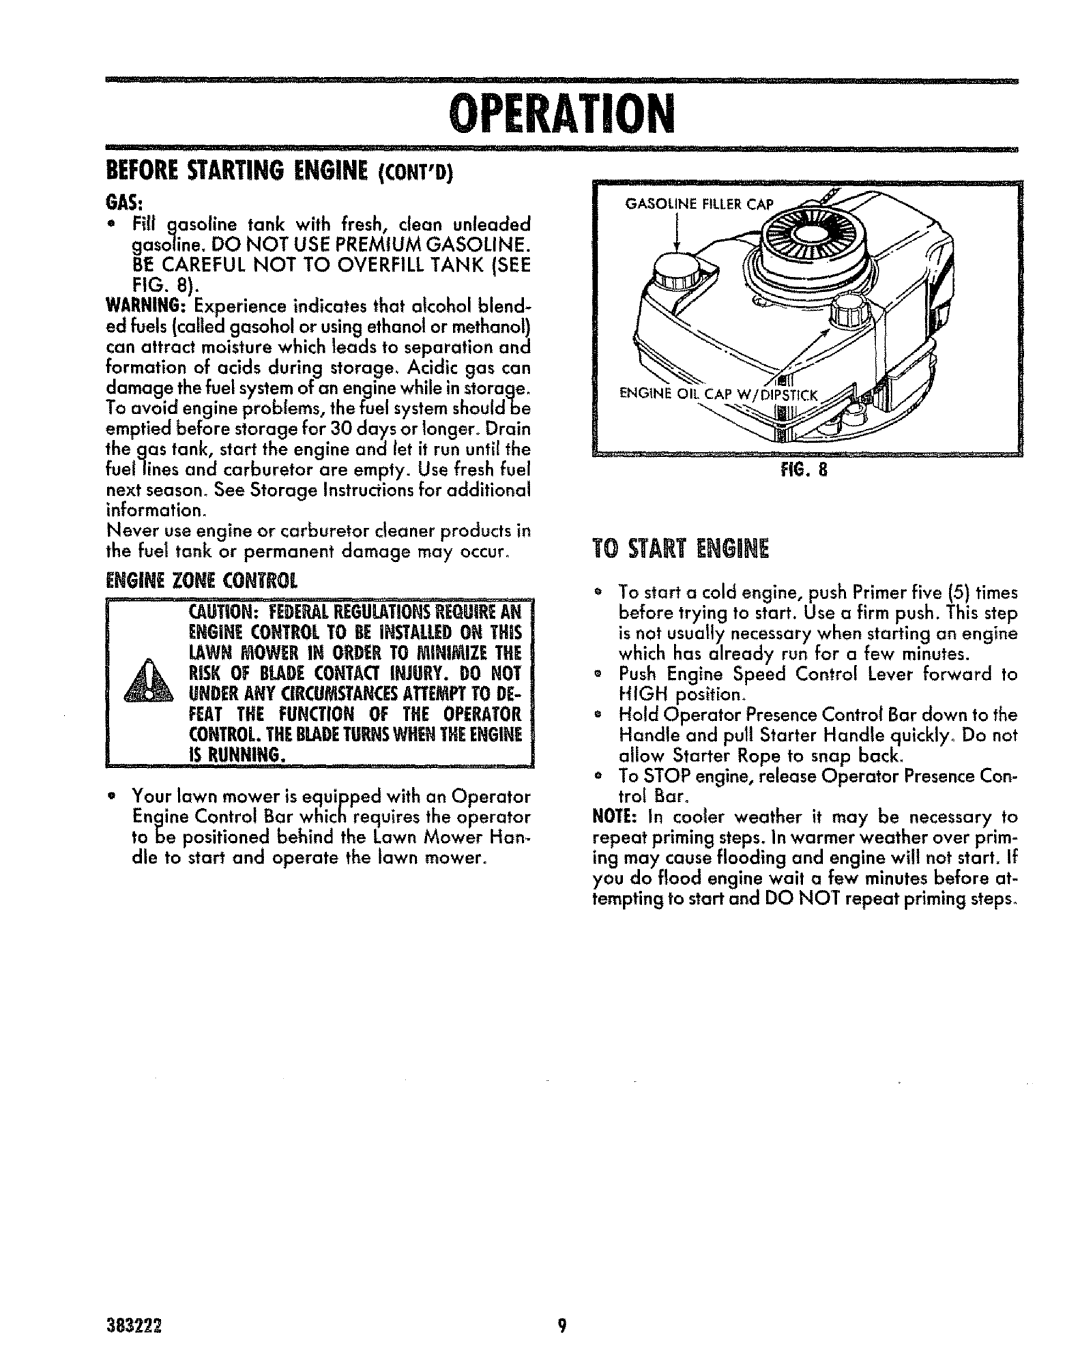 Sears 917.383223 manual Beforestartingenginecontd, Tg Startehguhe, Enginezonecontrol, Operaion 